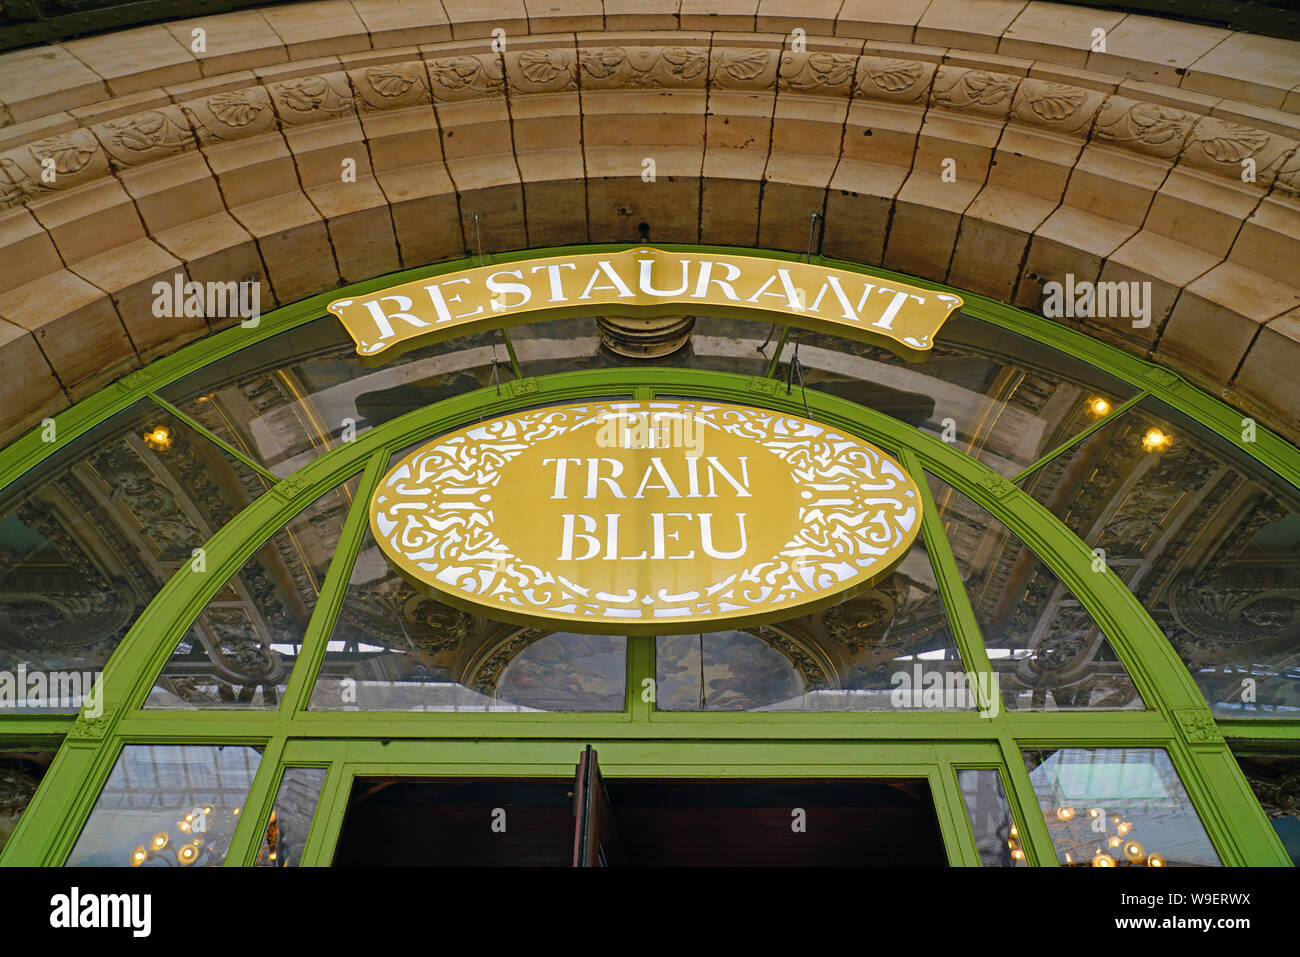 PARIS, FRANCE -20 JUL 2019- View of the landmark Belle Epoque Le Train Bleu (the blue train) restaurant inside the historic Gare de Lyon train station Stock Photo